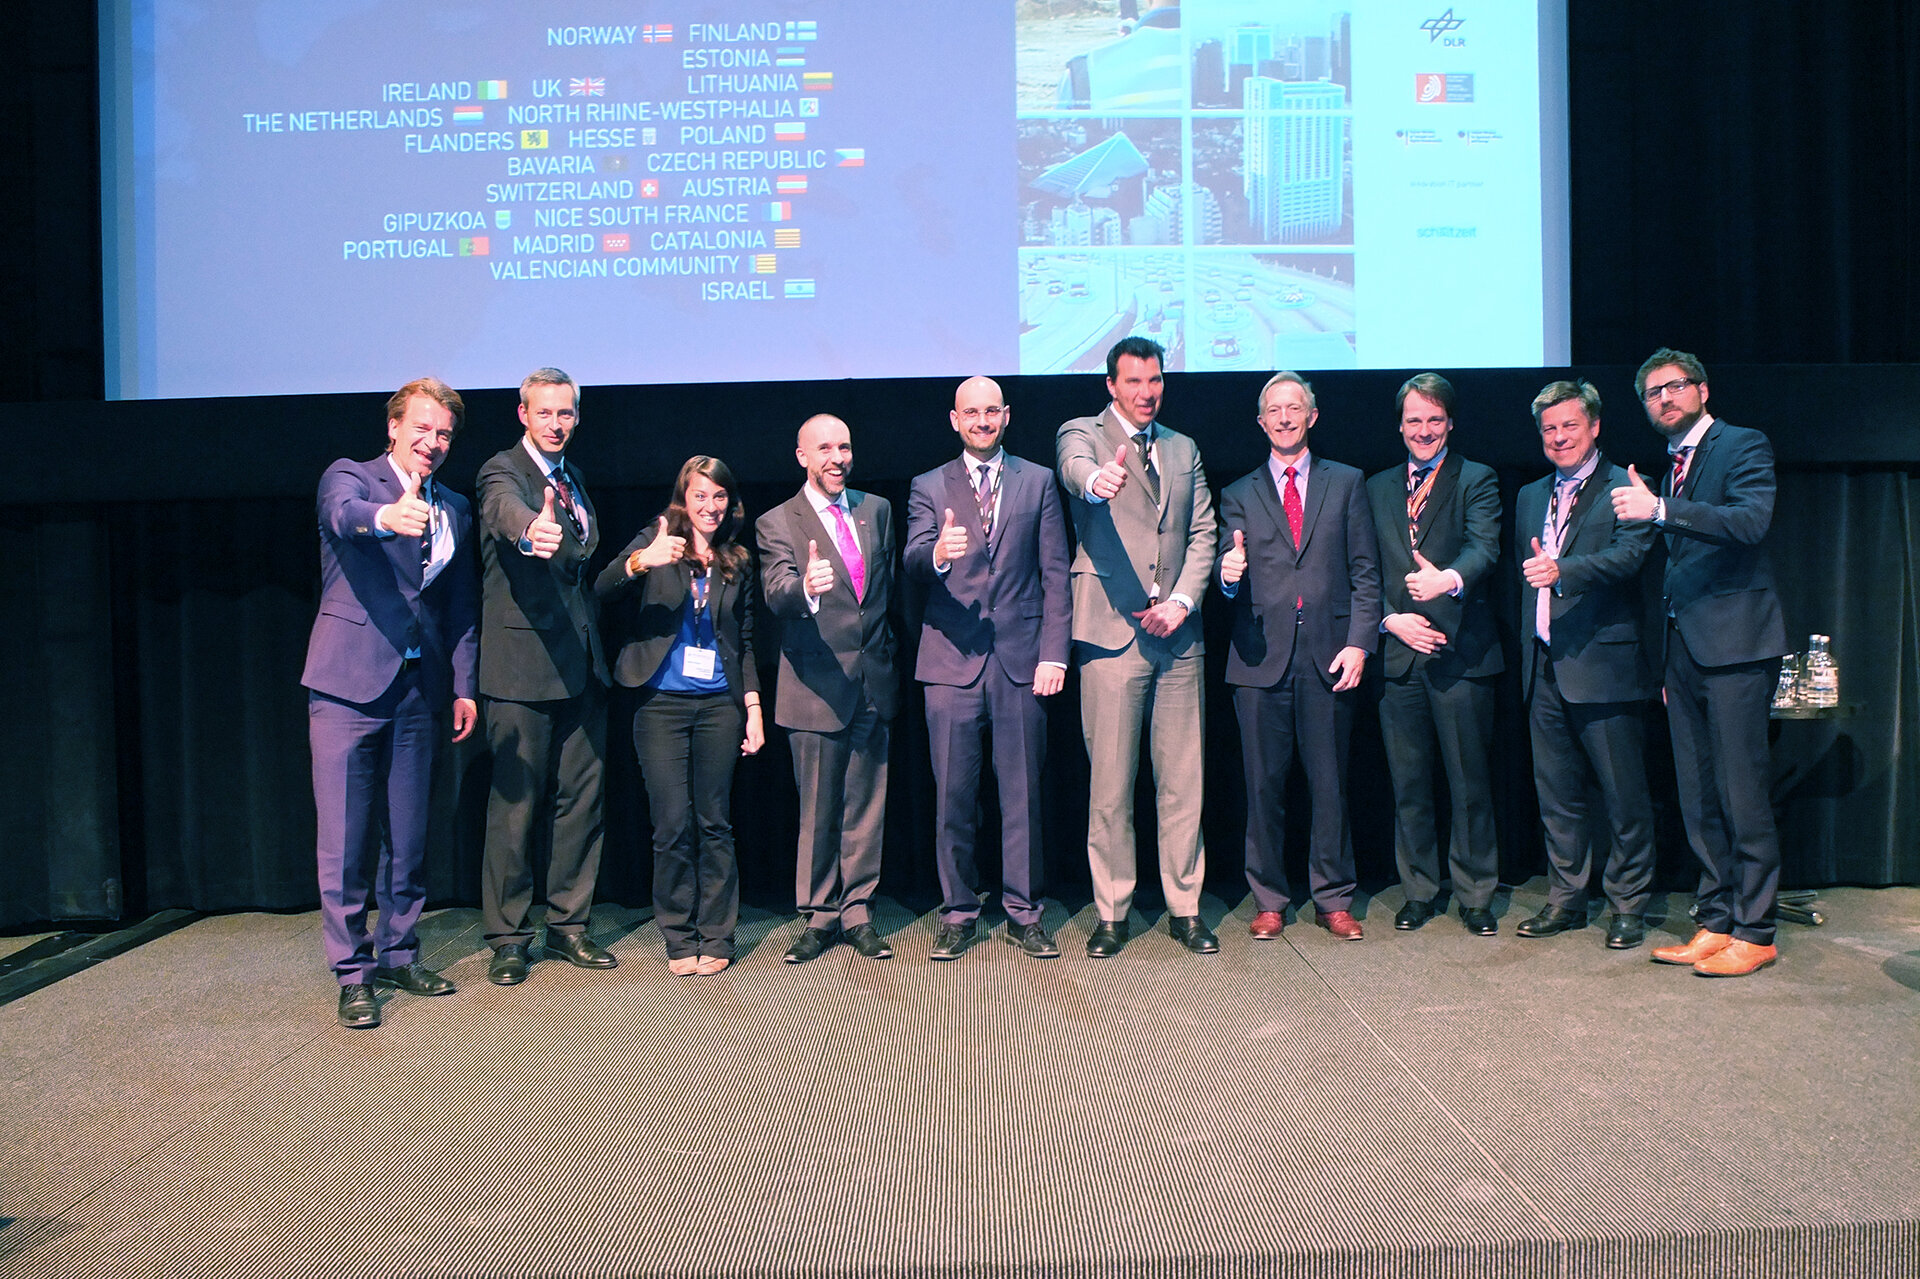  ESNC 2014 participants at ENC 2014 in Rotterdam